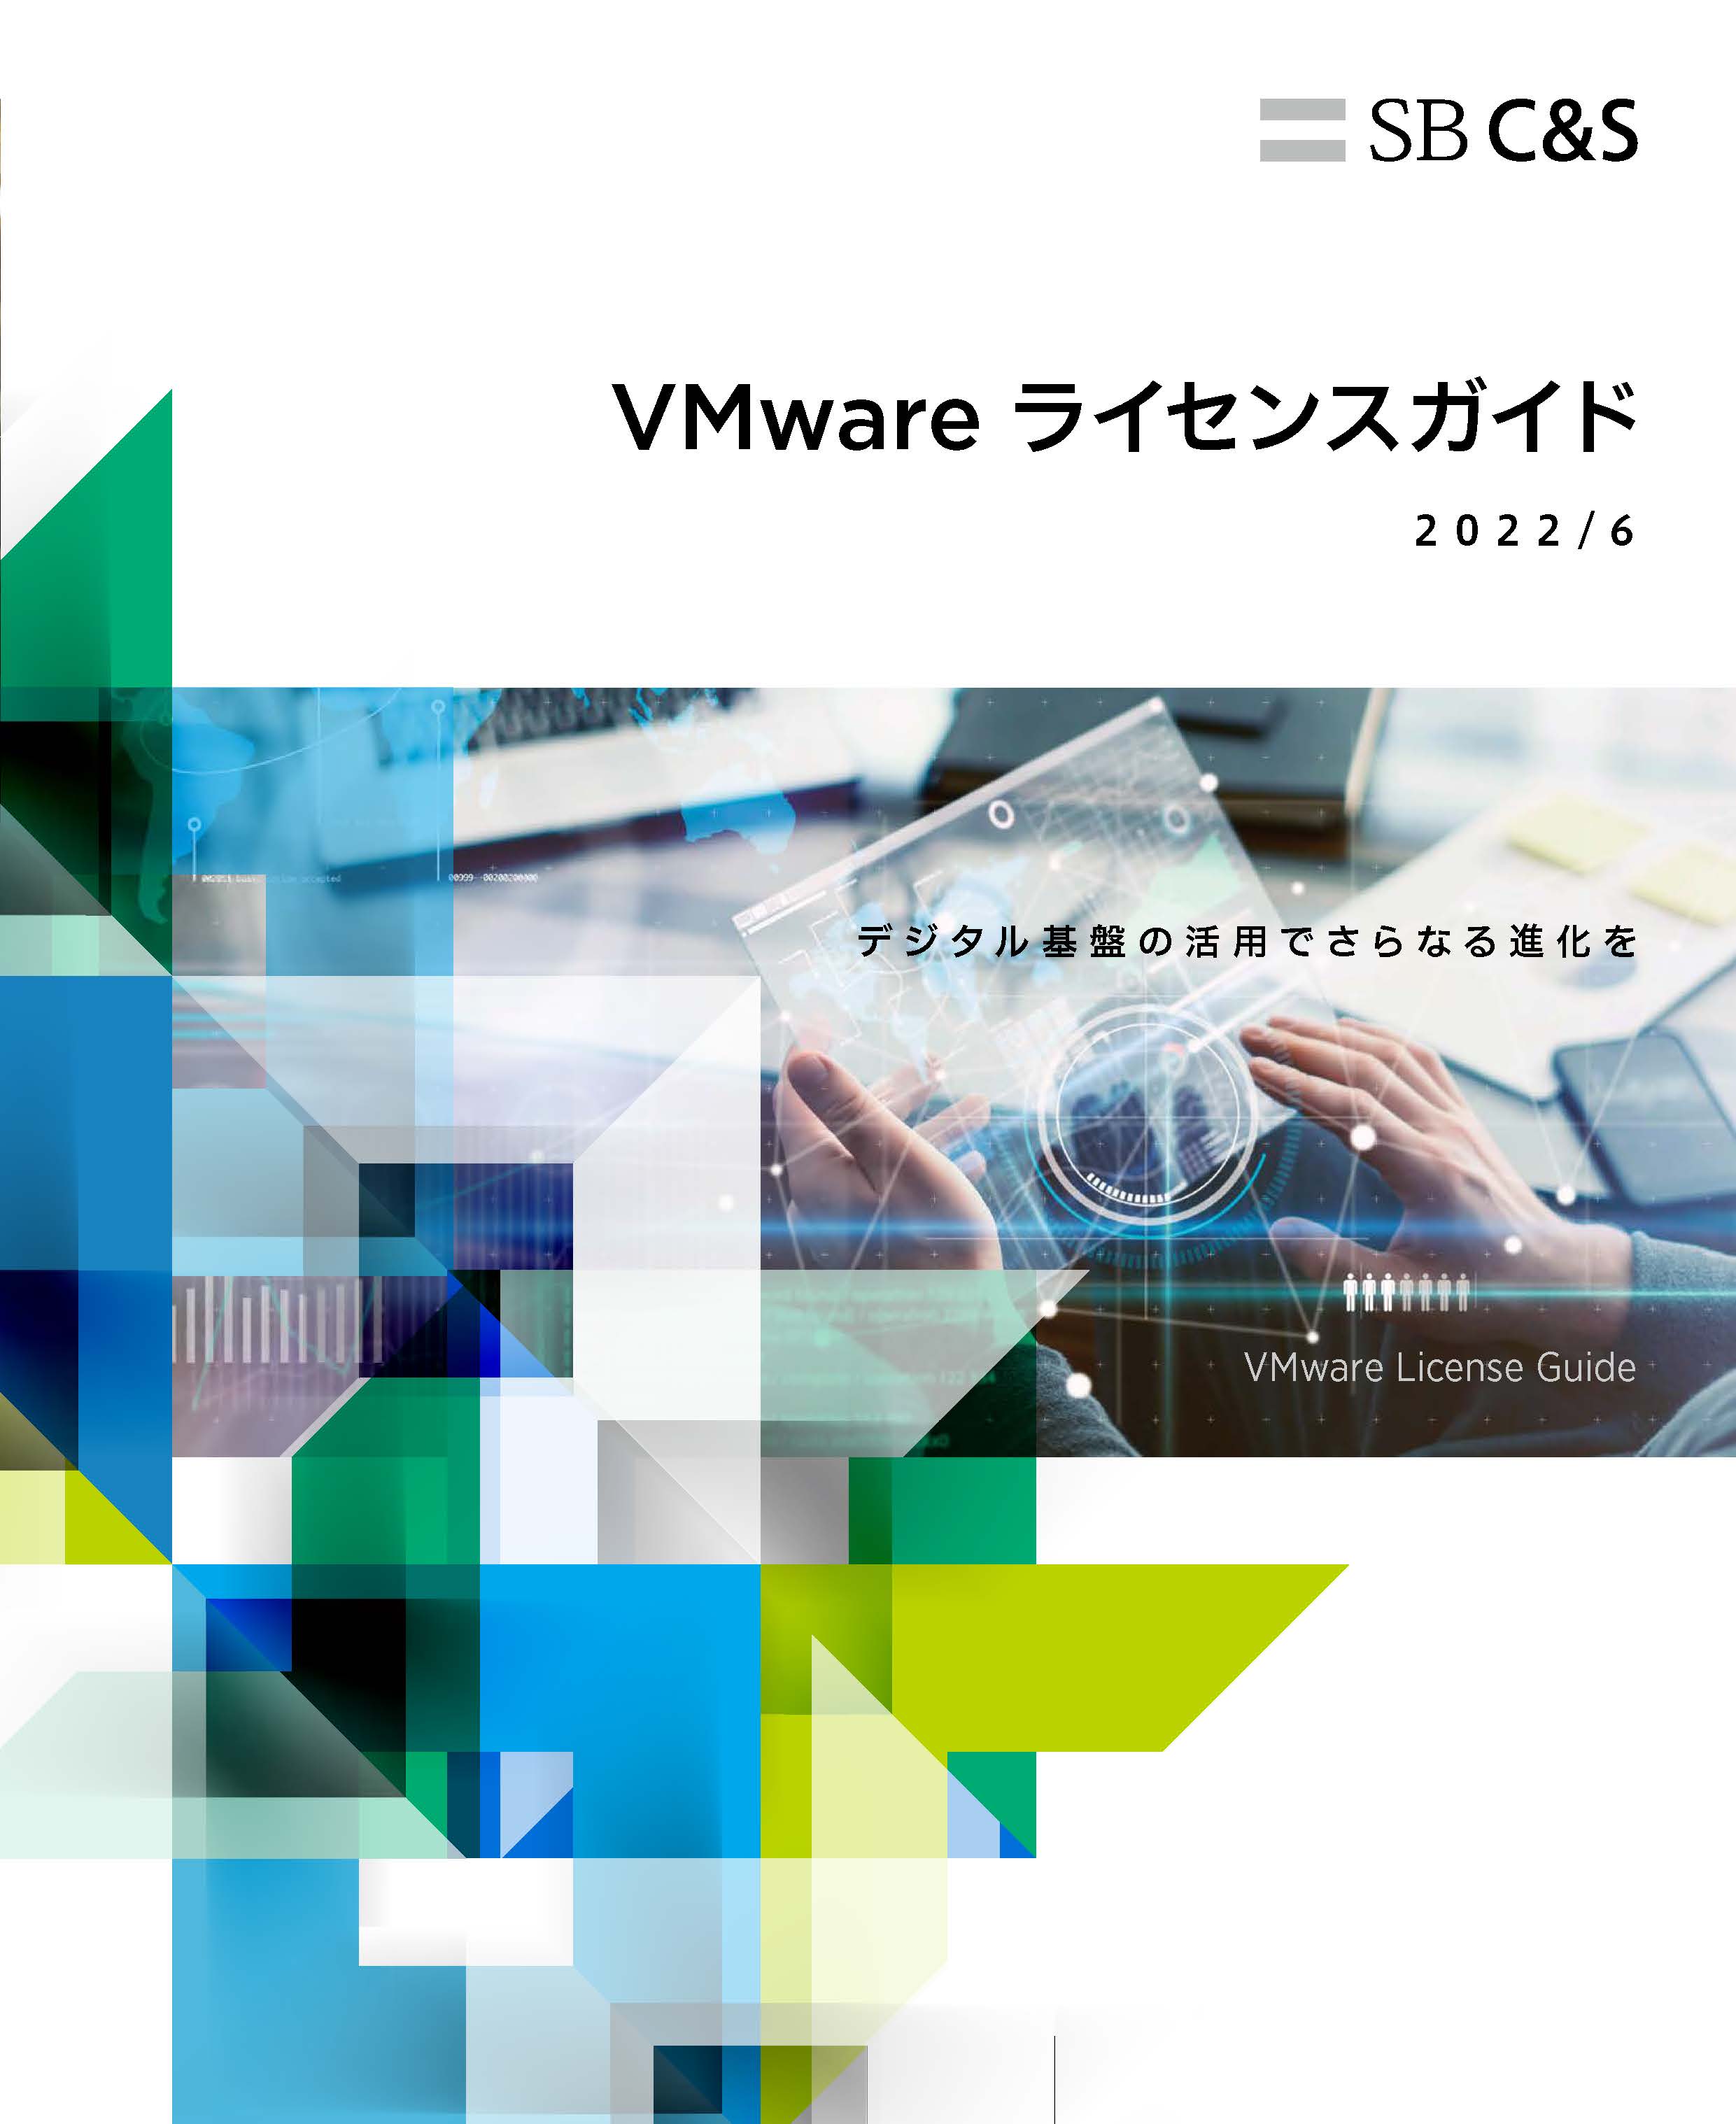 VMware ライセンスガイド 2022年6月版